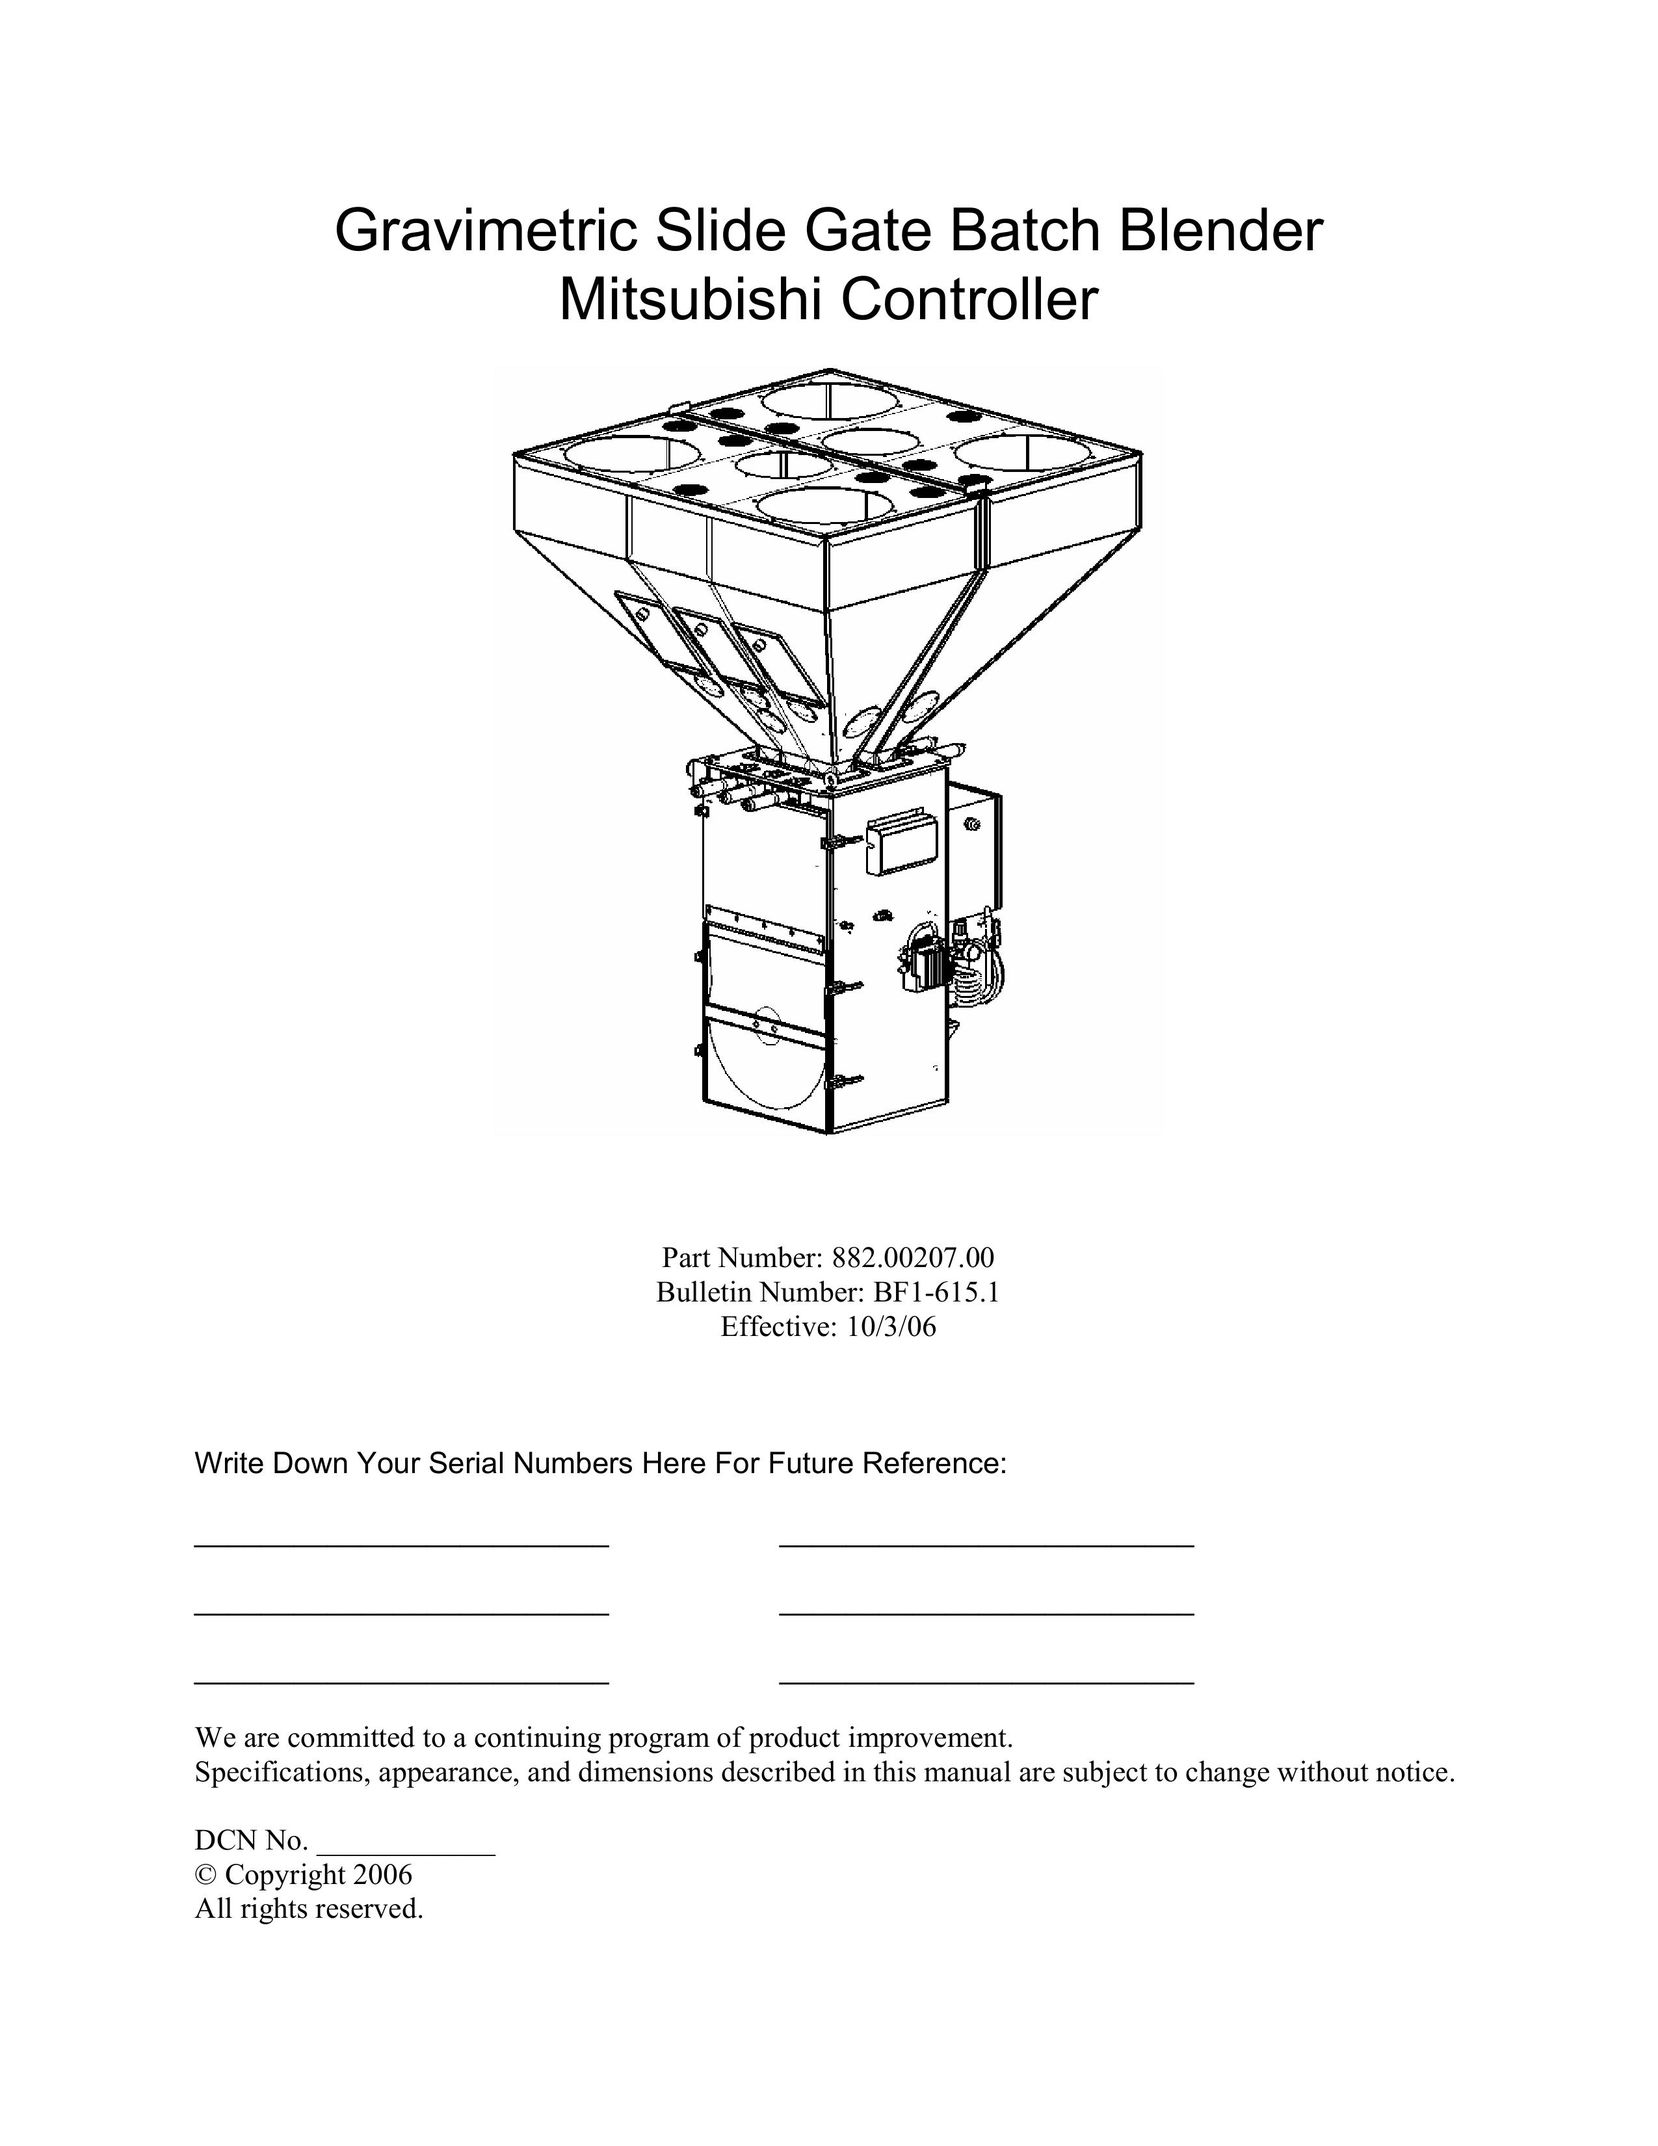 Mitsubishi Electronics 882.00207.00 Blender User Manual